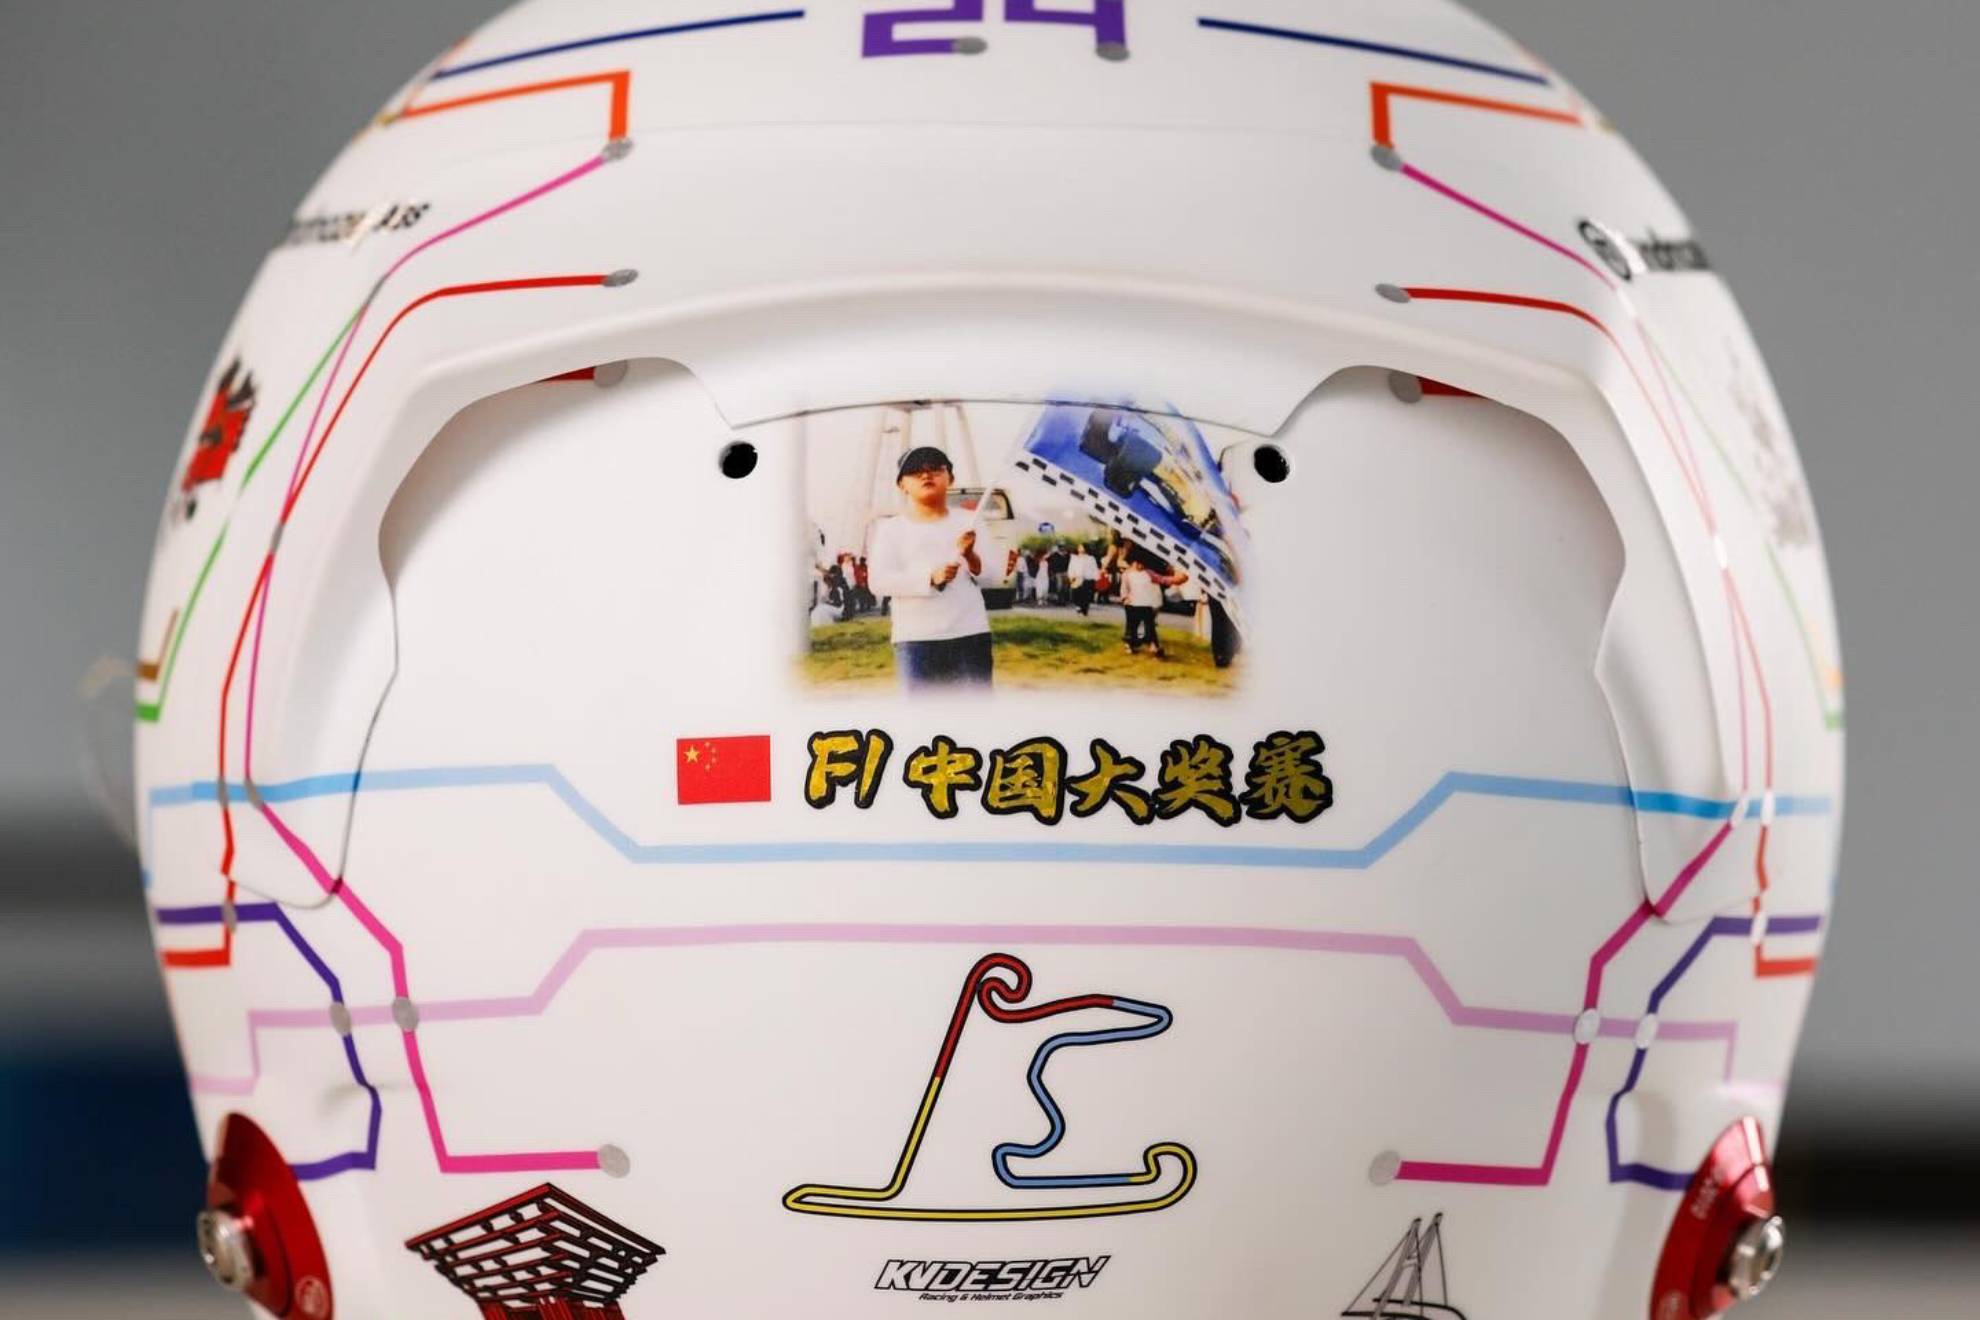 El casco de Guanyu Zhou para el GP de China